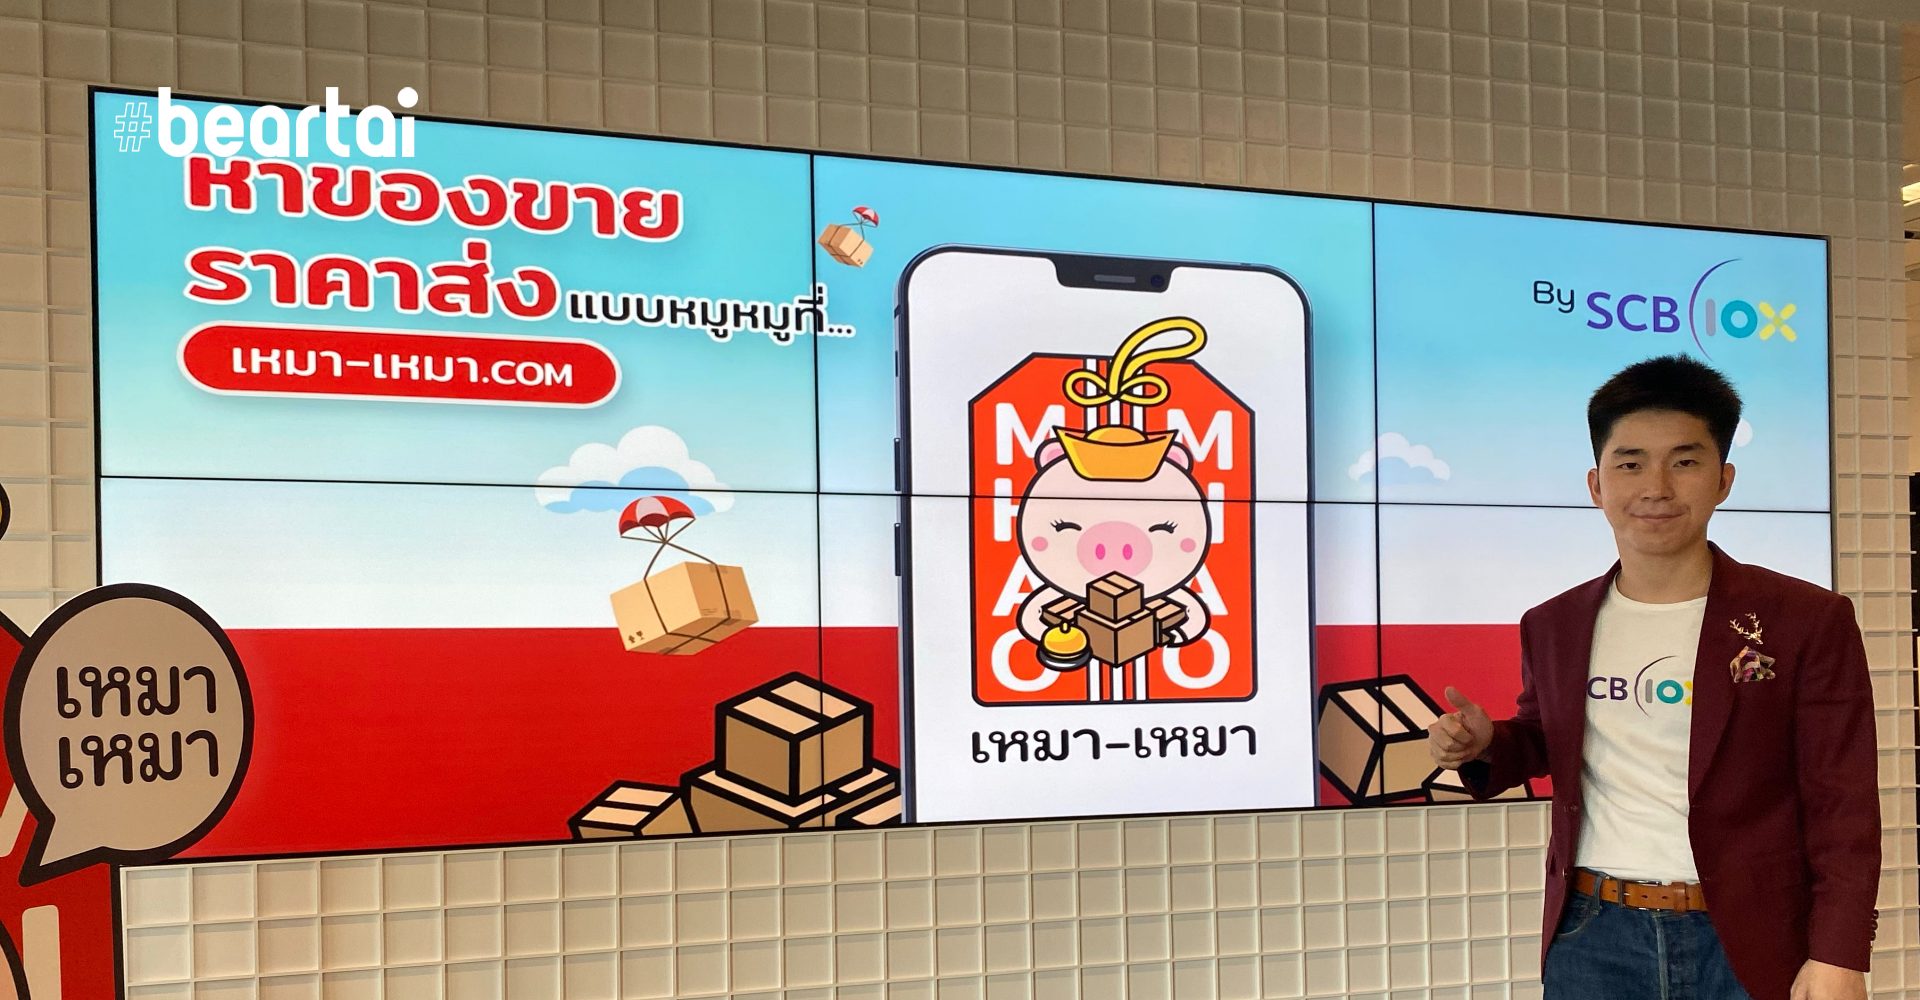 SCB เปิดตัวเว็บ “เหมา เหมา” ลุยค้าส่ง หวังเป็น Taobao เมืองไทย